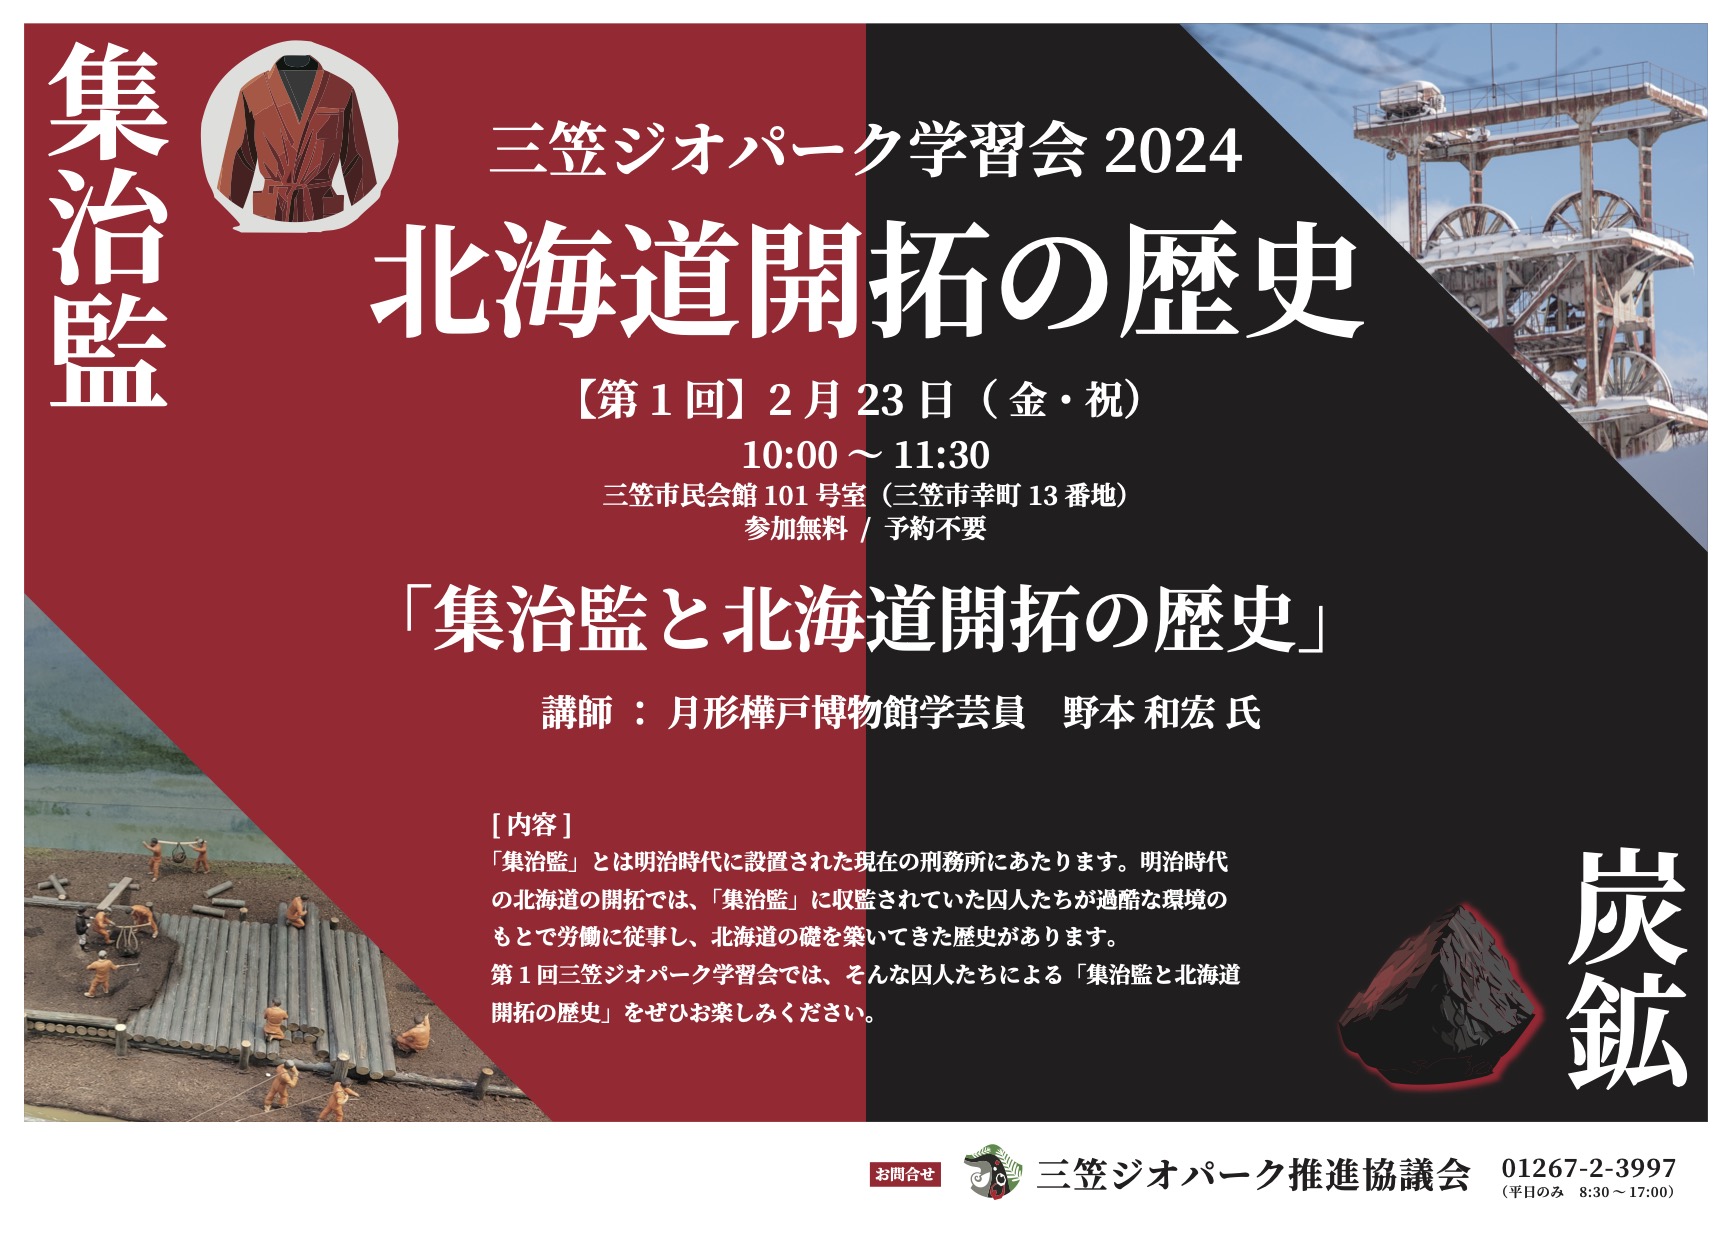 三笠ジオパーク学習会「集治監と北海道開拓の歴史」を開催します